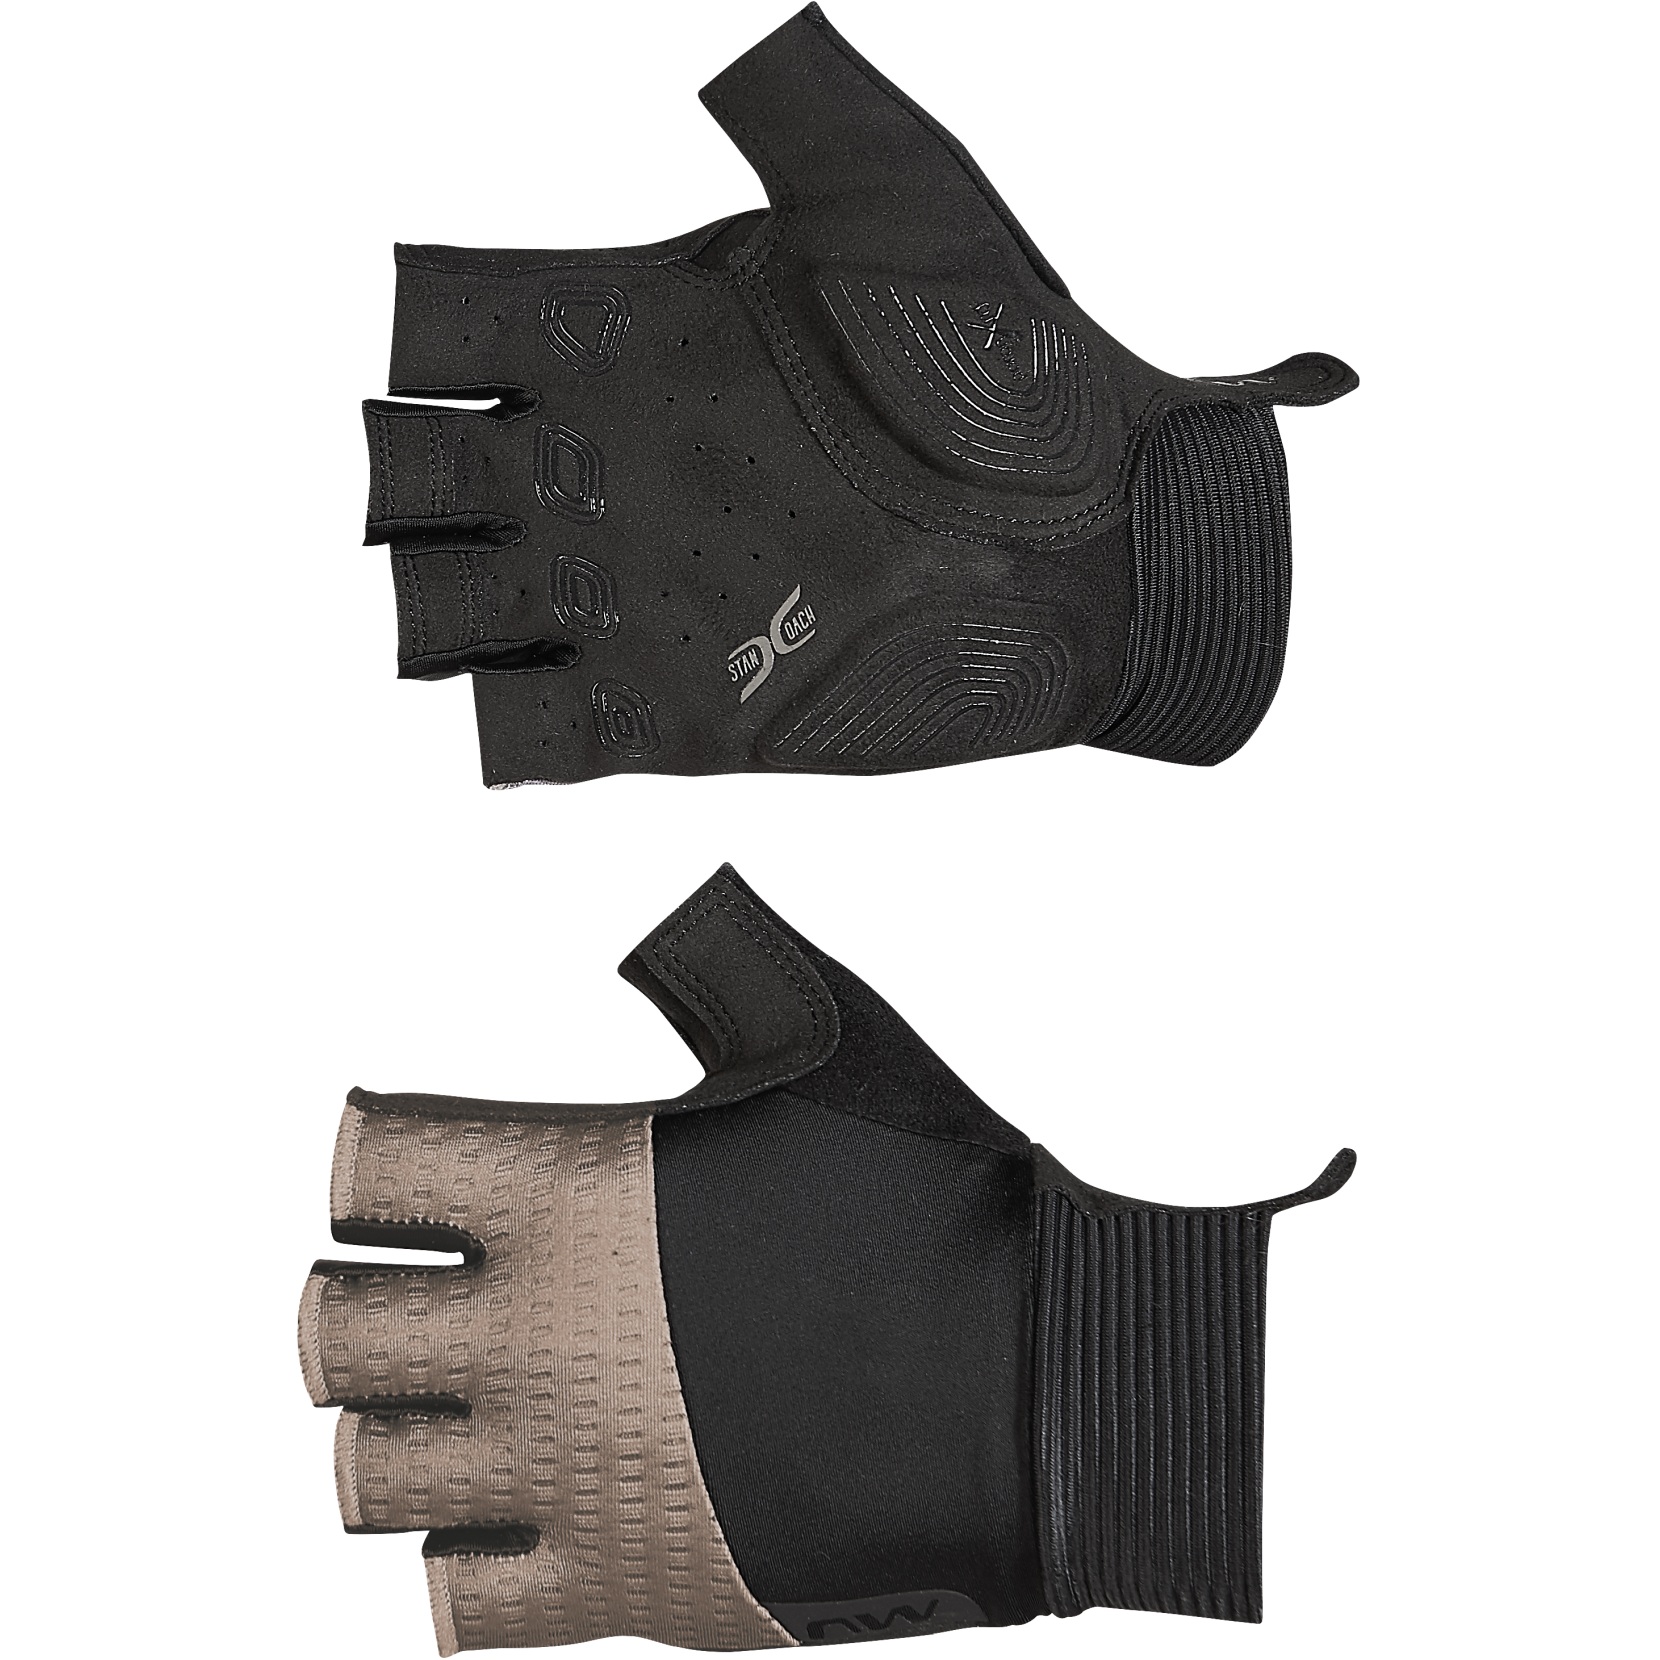 Produktbild von Northwave Extreme Pro Kurzfinger-Handschuhe Herren - schwarz/sand 05